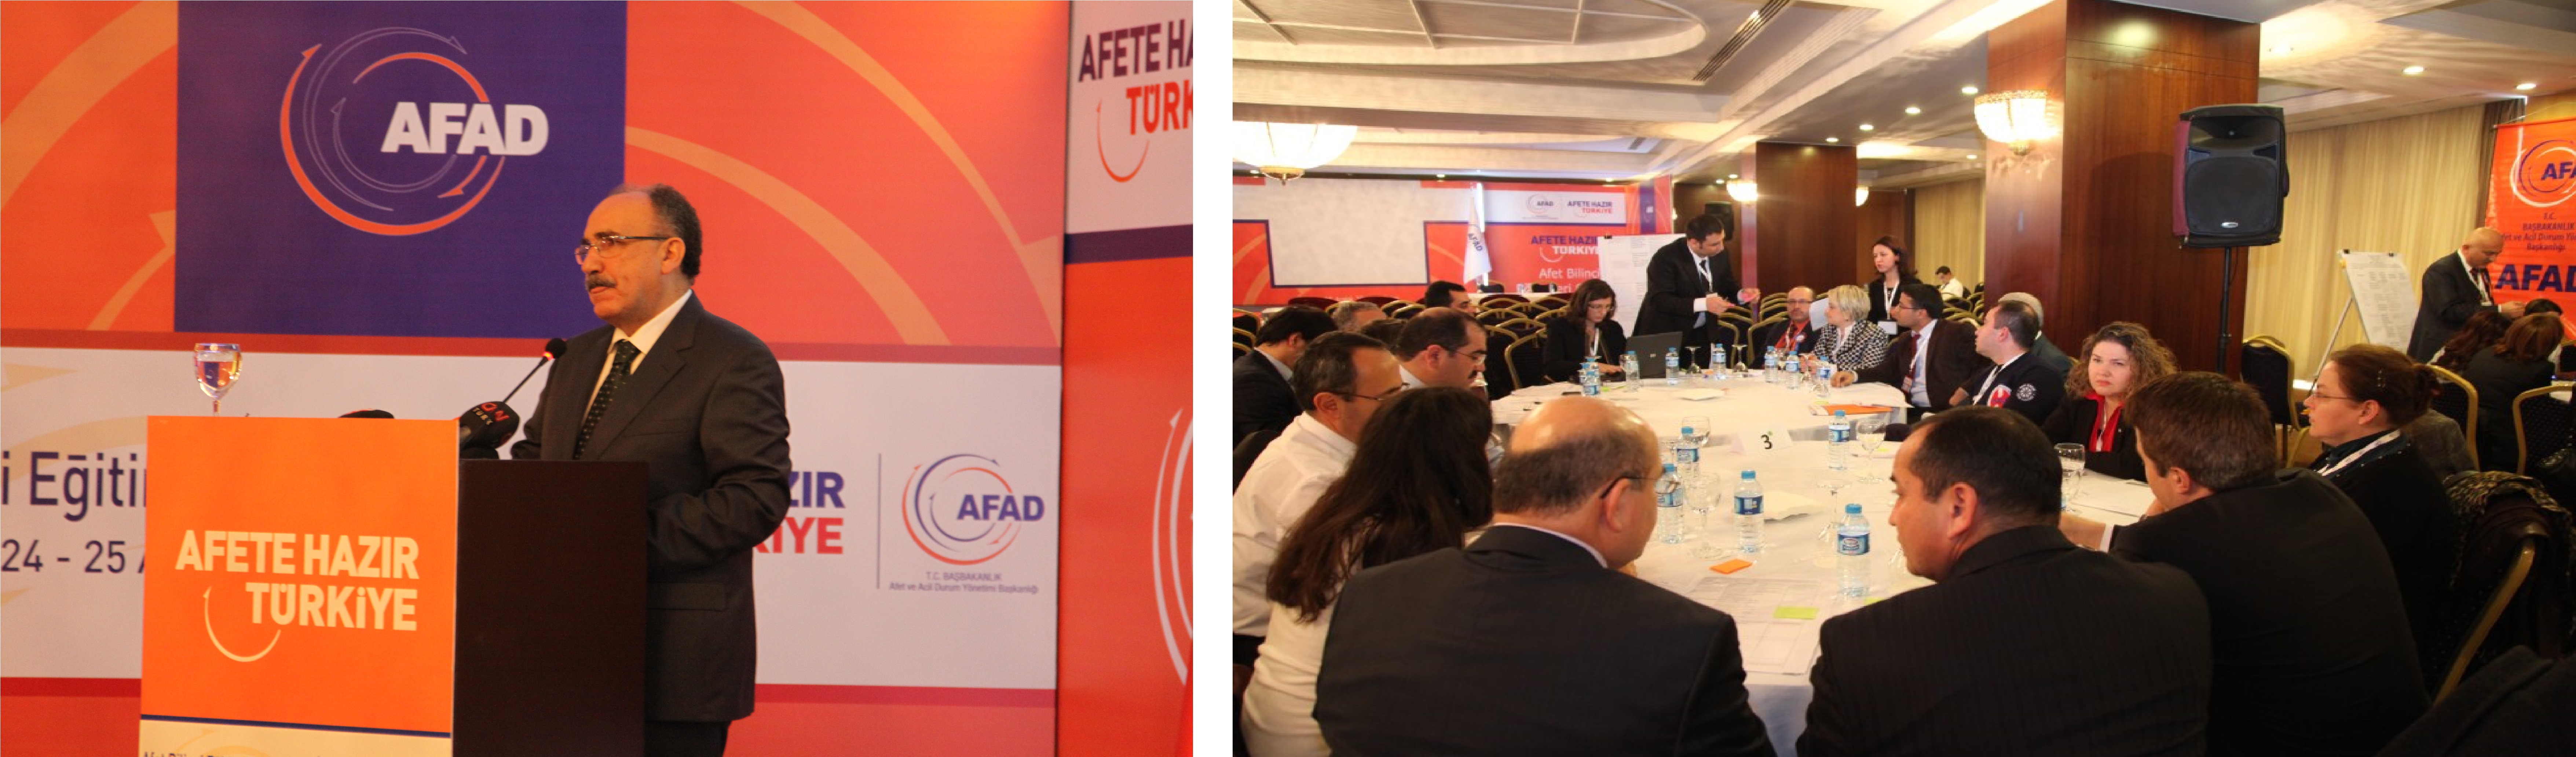 AFAM, Afete Hazır Türkiye Çalıştayına Katıldı-2.JPG